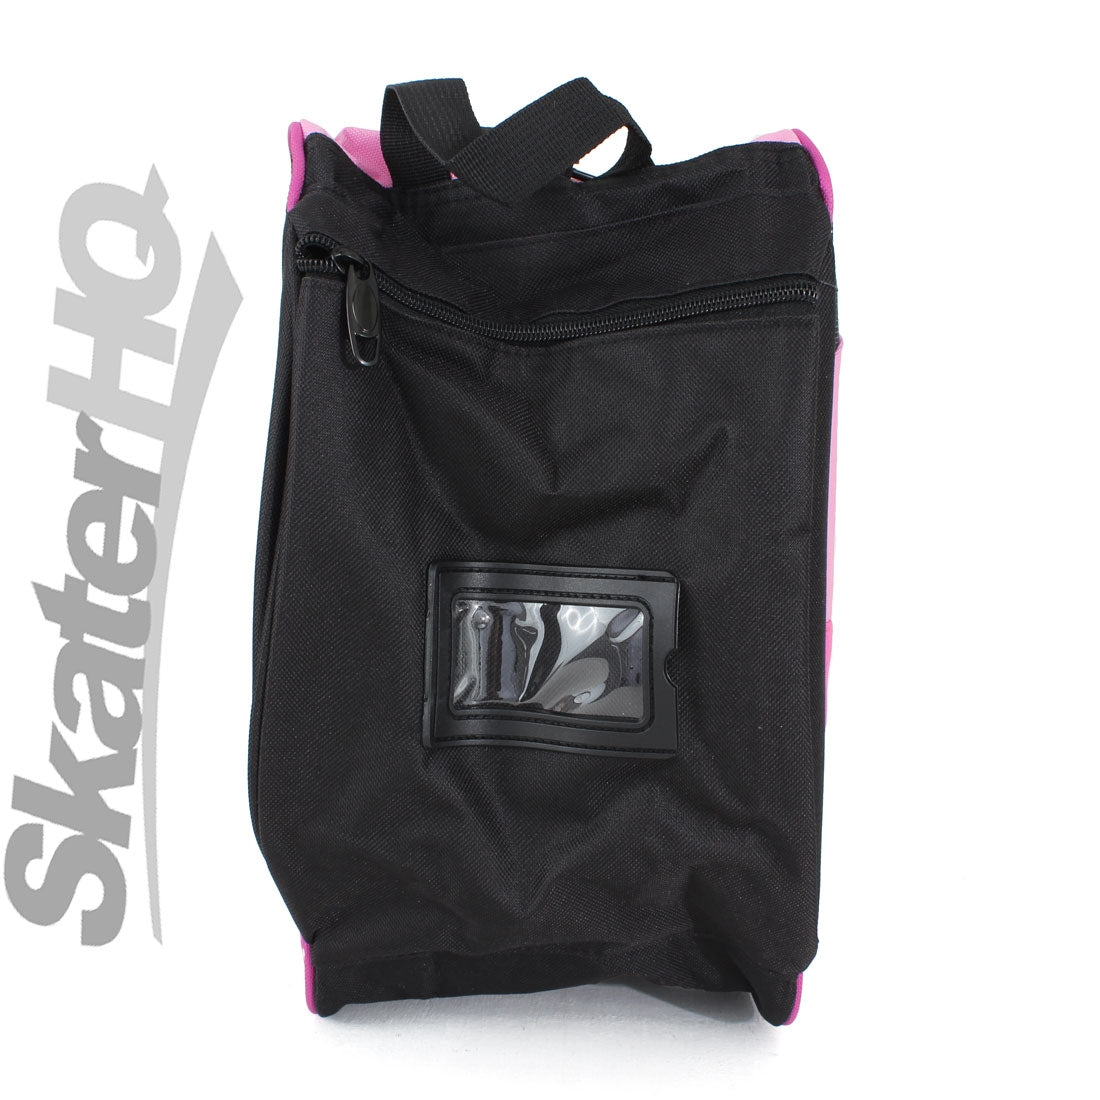 SFR Skate Bag V2 - Pink Bags and Backpacks